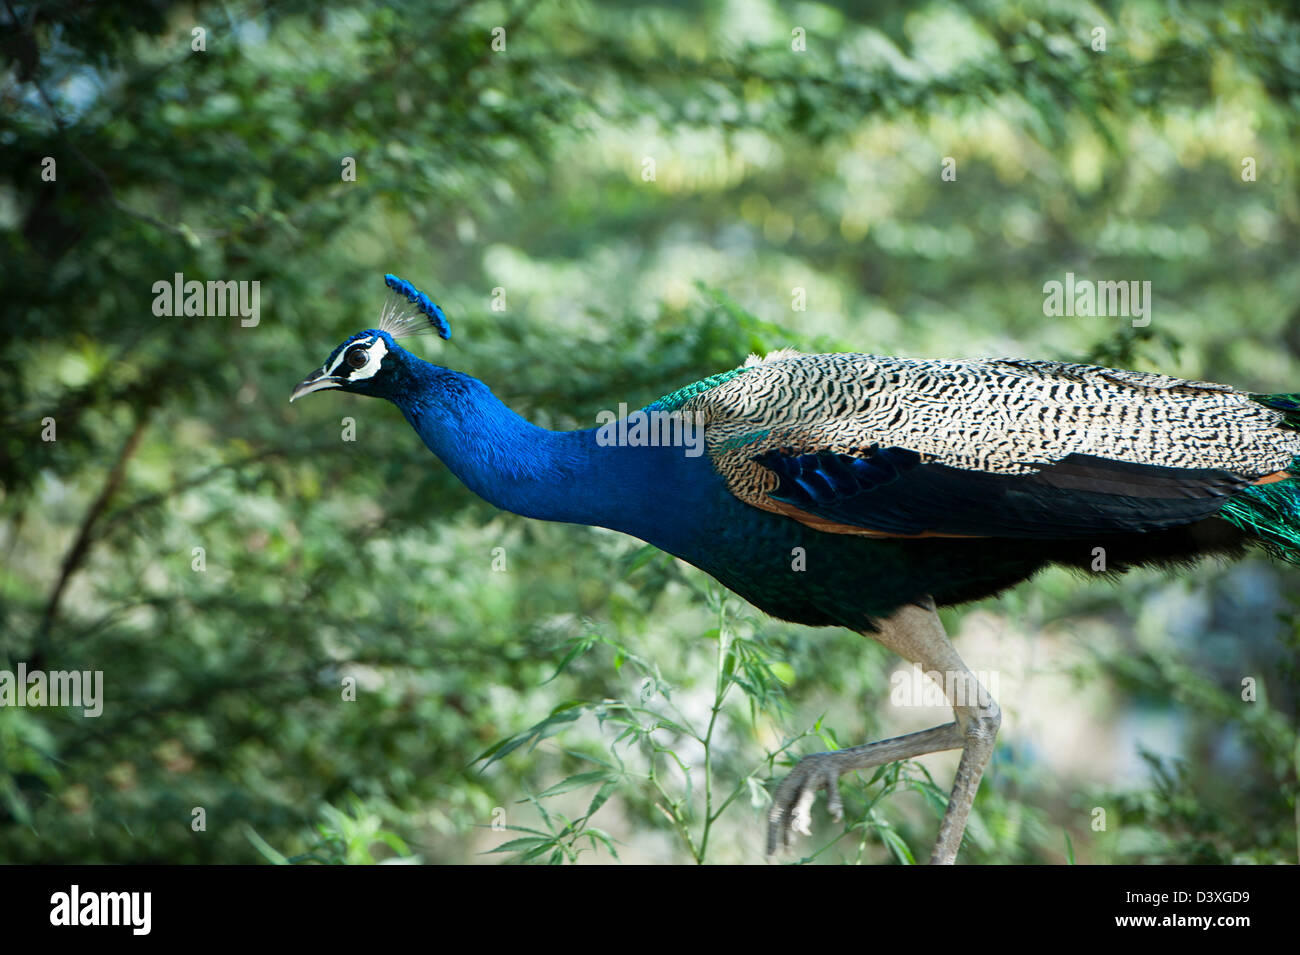 Peacock, Sohna, Haryana, India Stock Photo